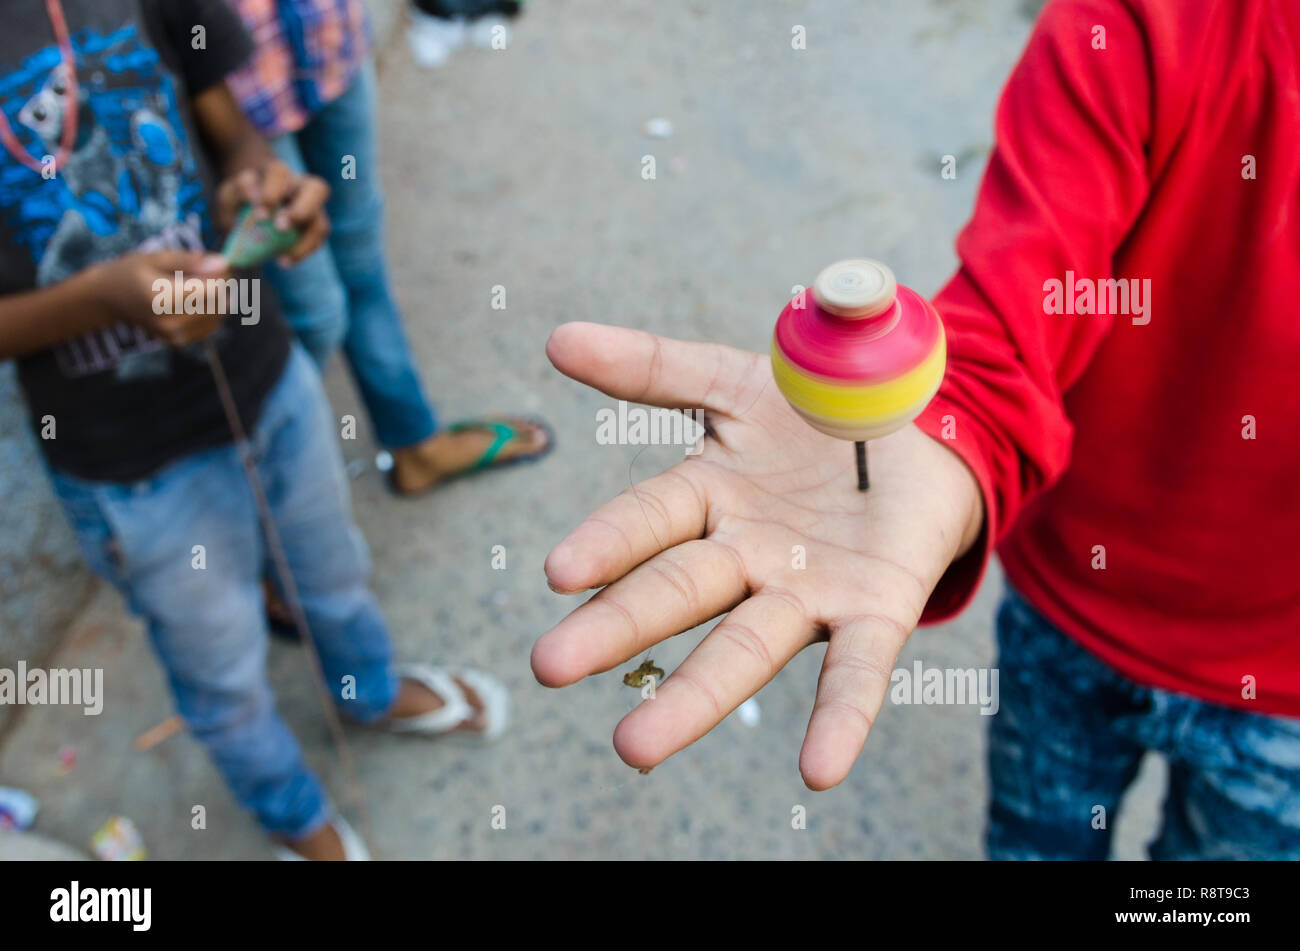 Jeune garçon indien de tourner une toupie sur sa main, Jodhpur, Inde Banque D'Images